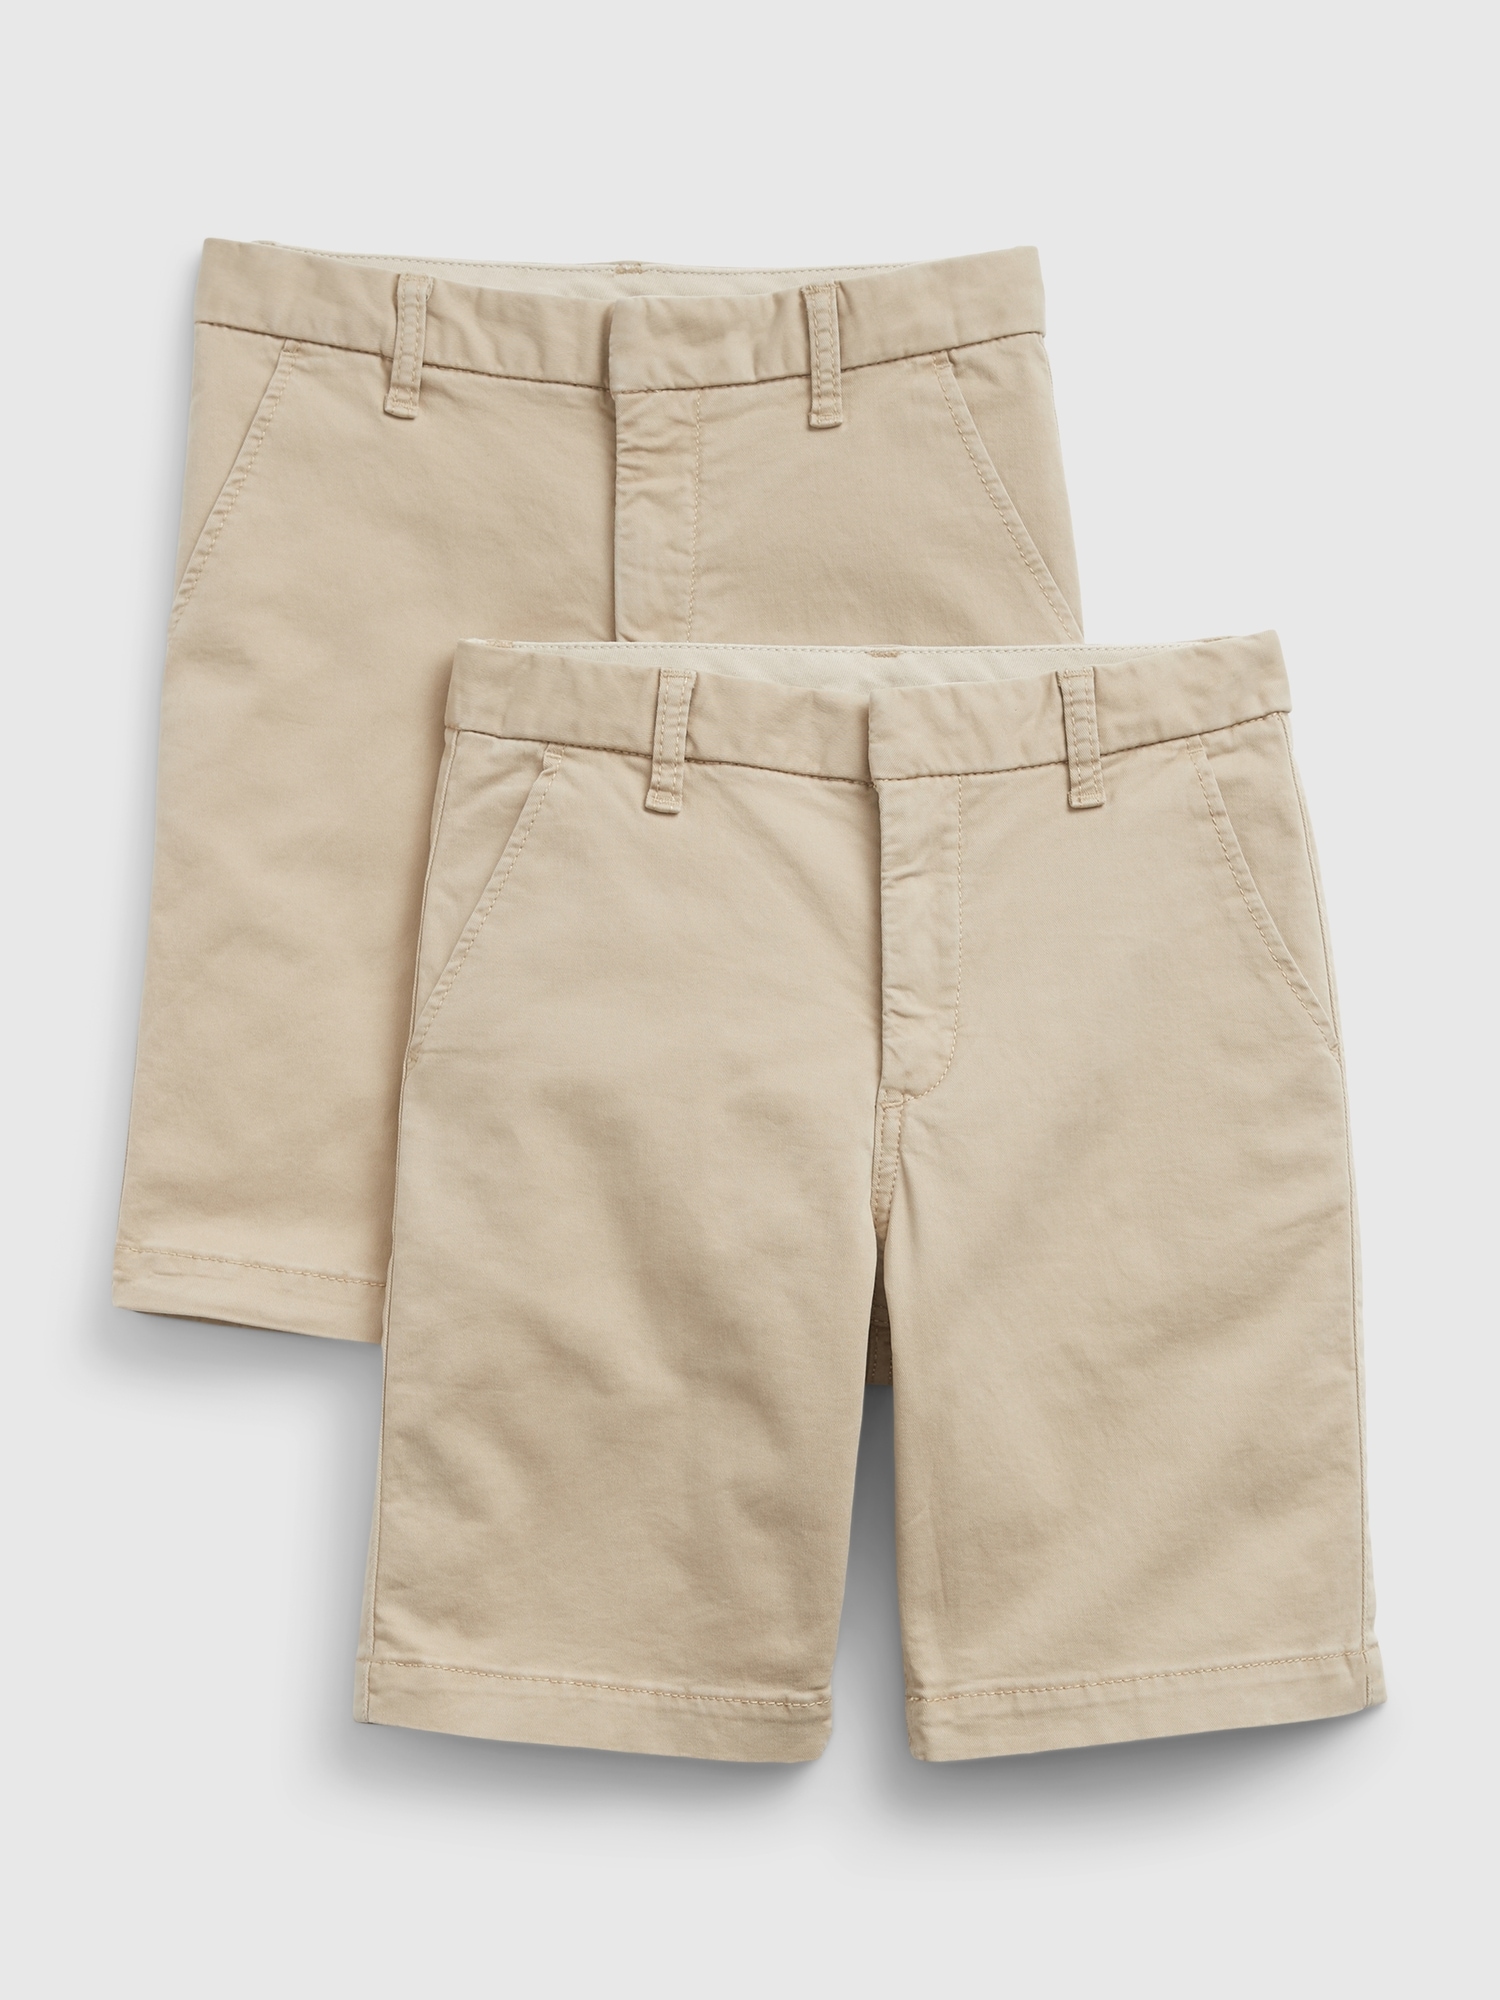 Gap Kids Uniform Shorts